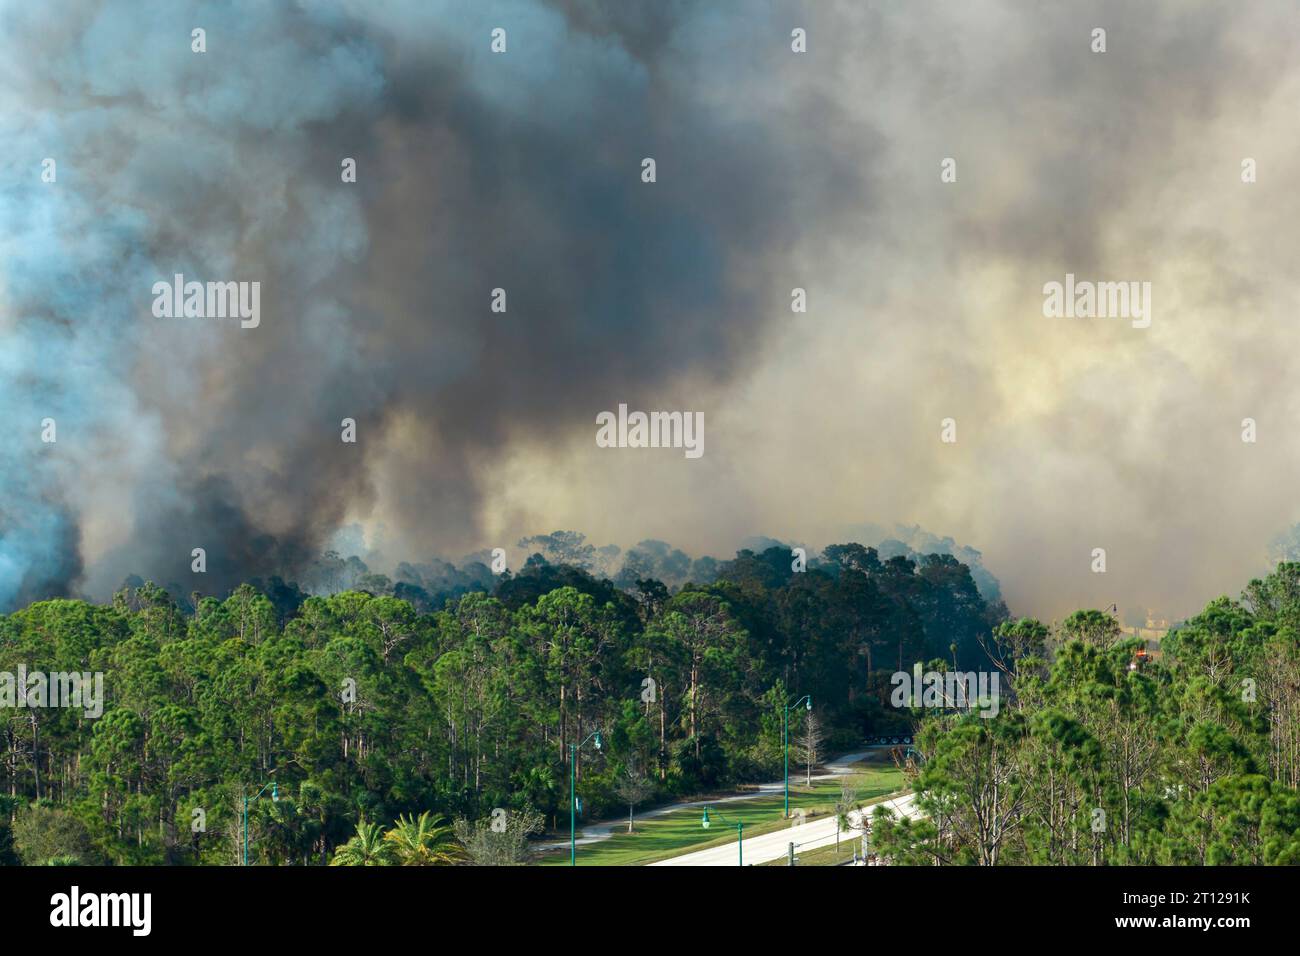 Feu de forêt dangereux brûlant sévèrement dans les bois de la jungle de Floride. Flammes chaudes dans une forêt dense. Atmosphère polluante de fumée toxique Banque D'Images